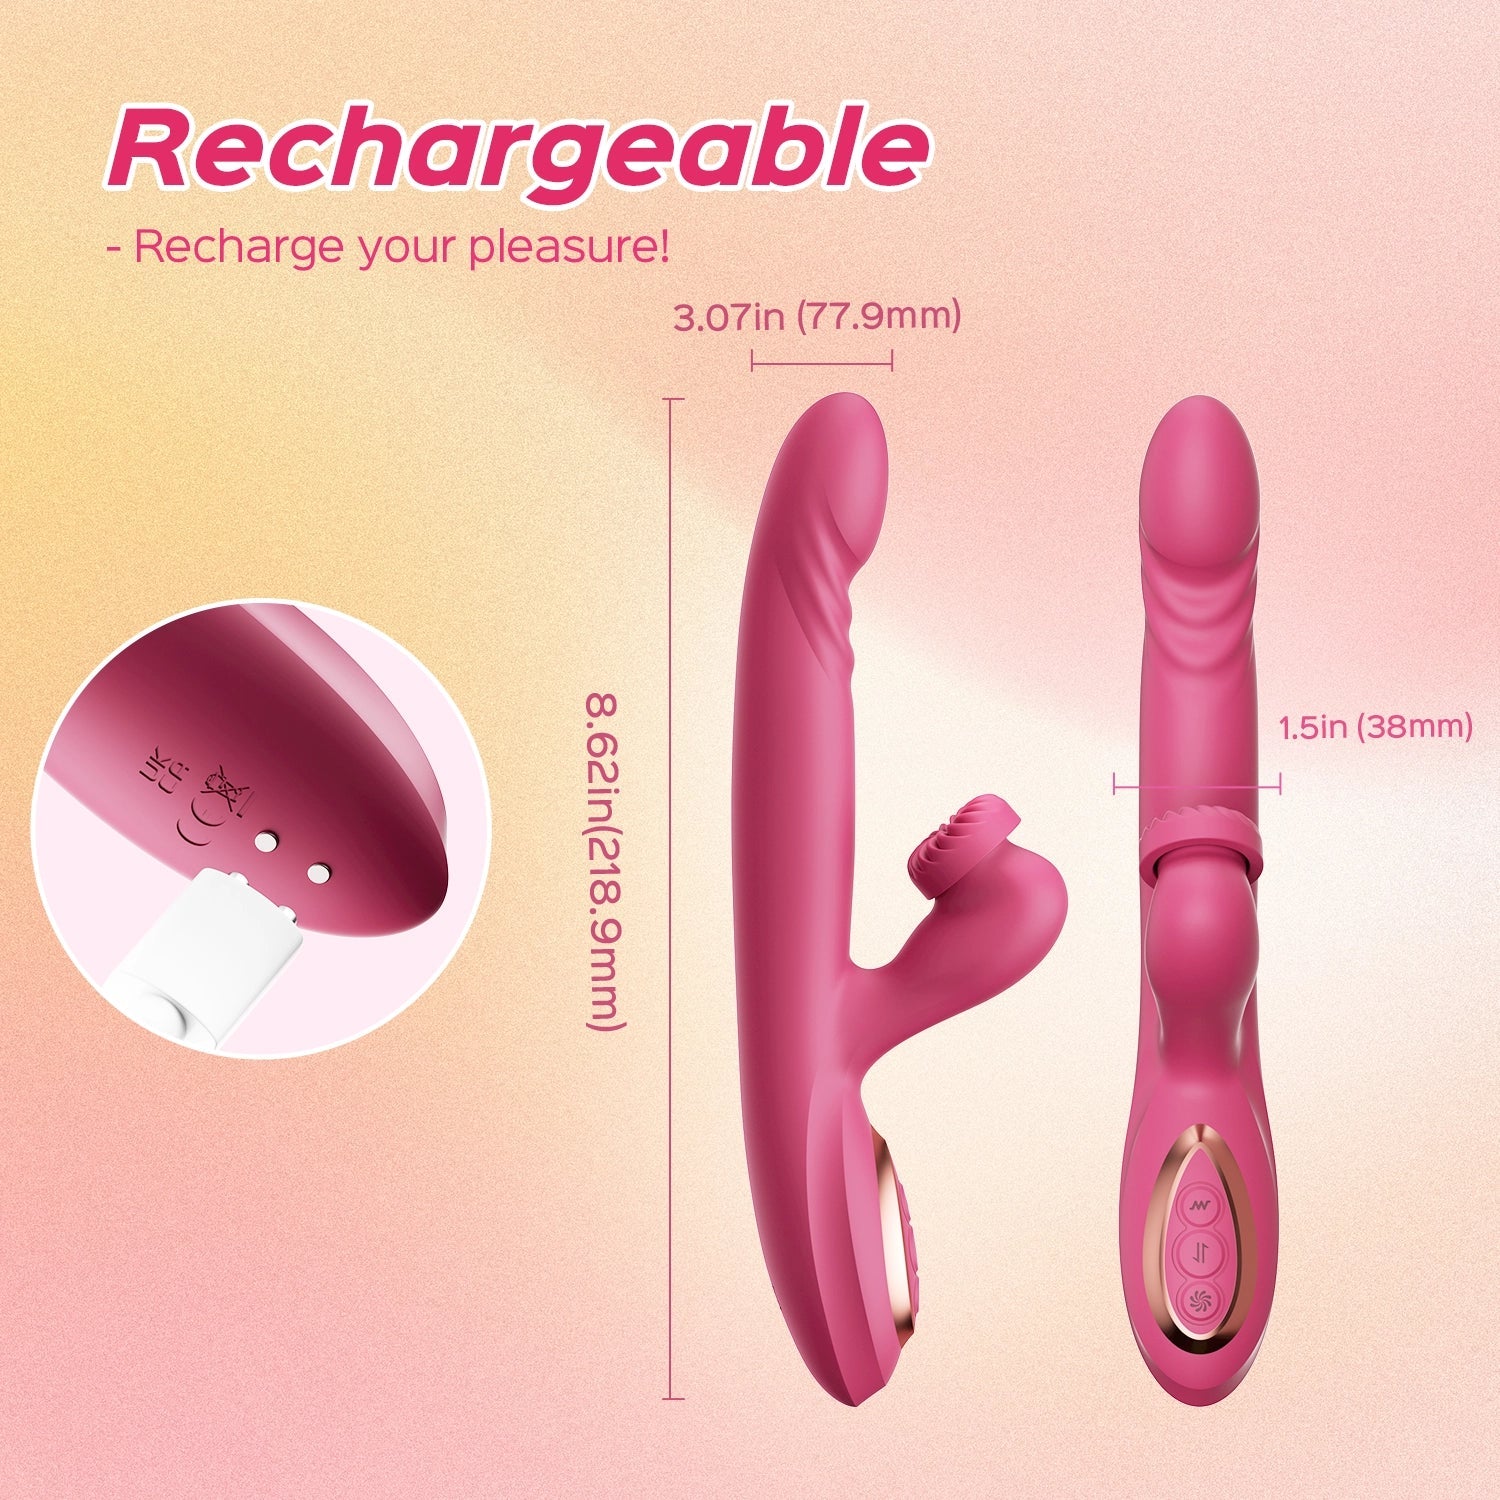 Vortex – Stoßender G-Punkt und rotierender Klitorisvibrator mit Doppelstimulator